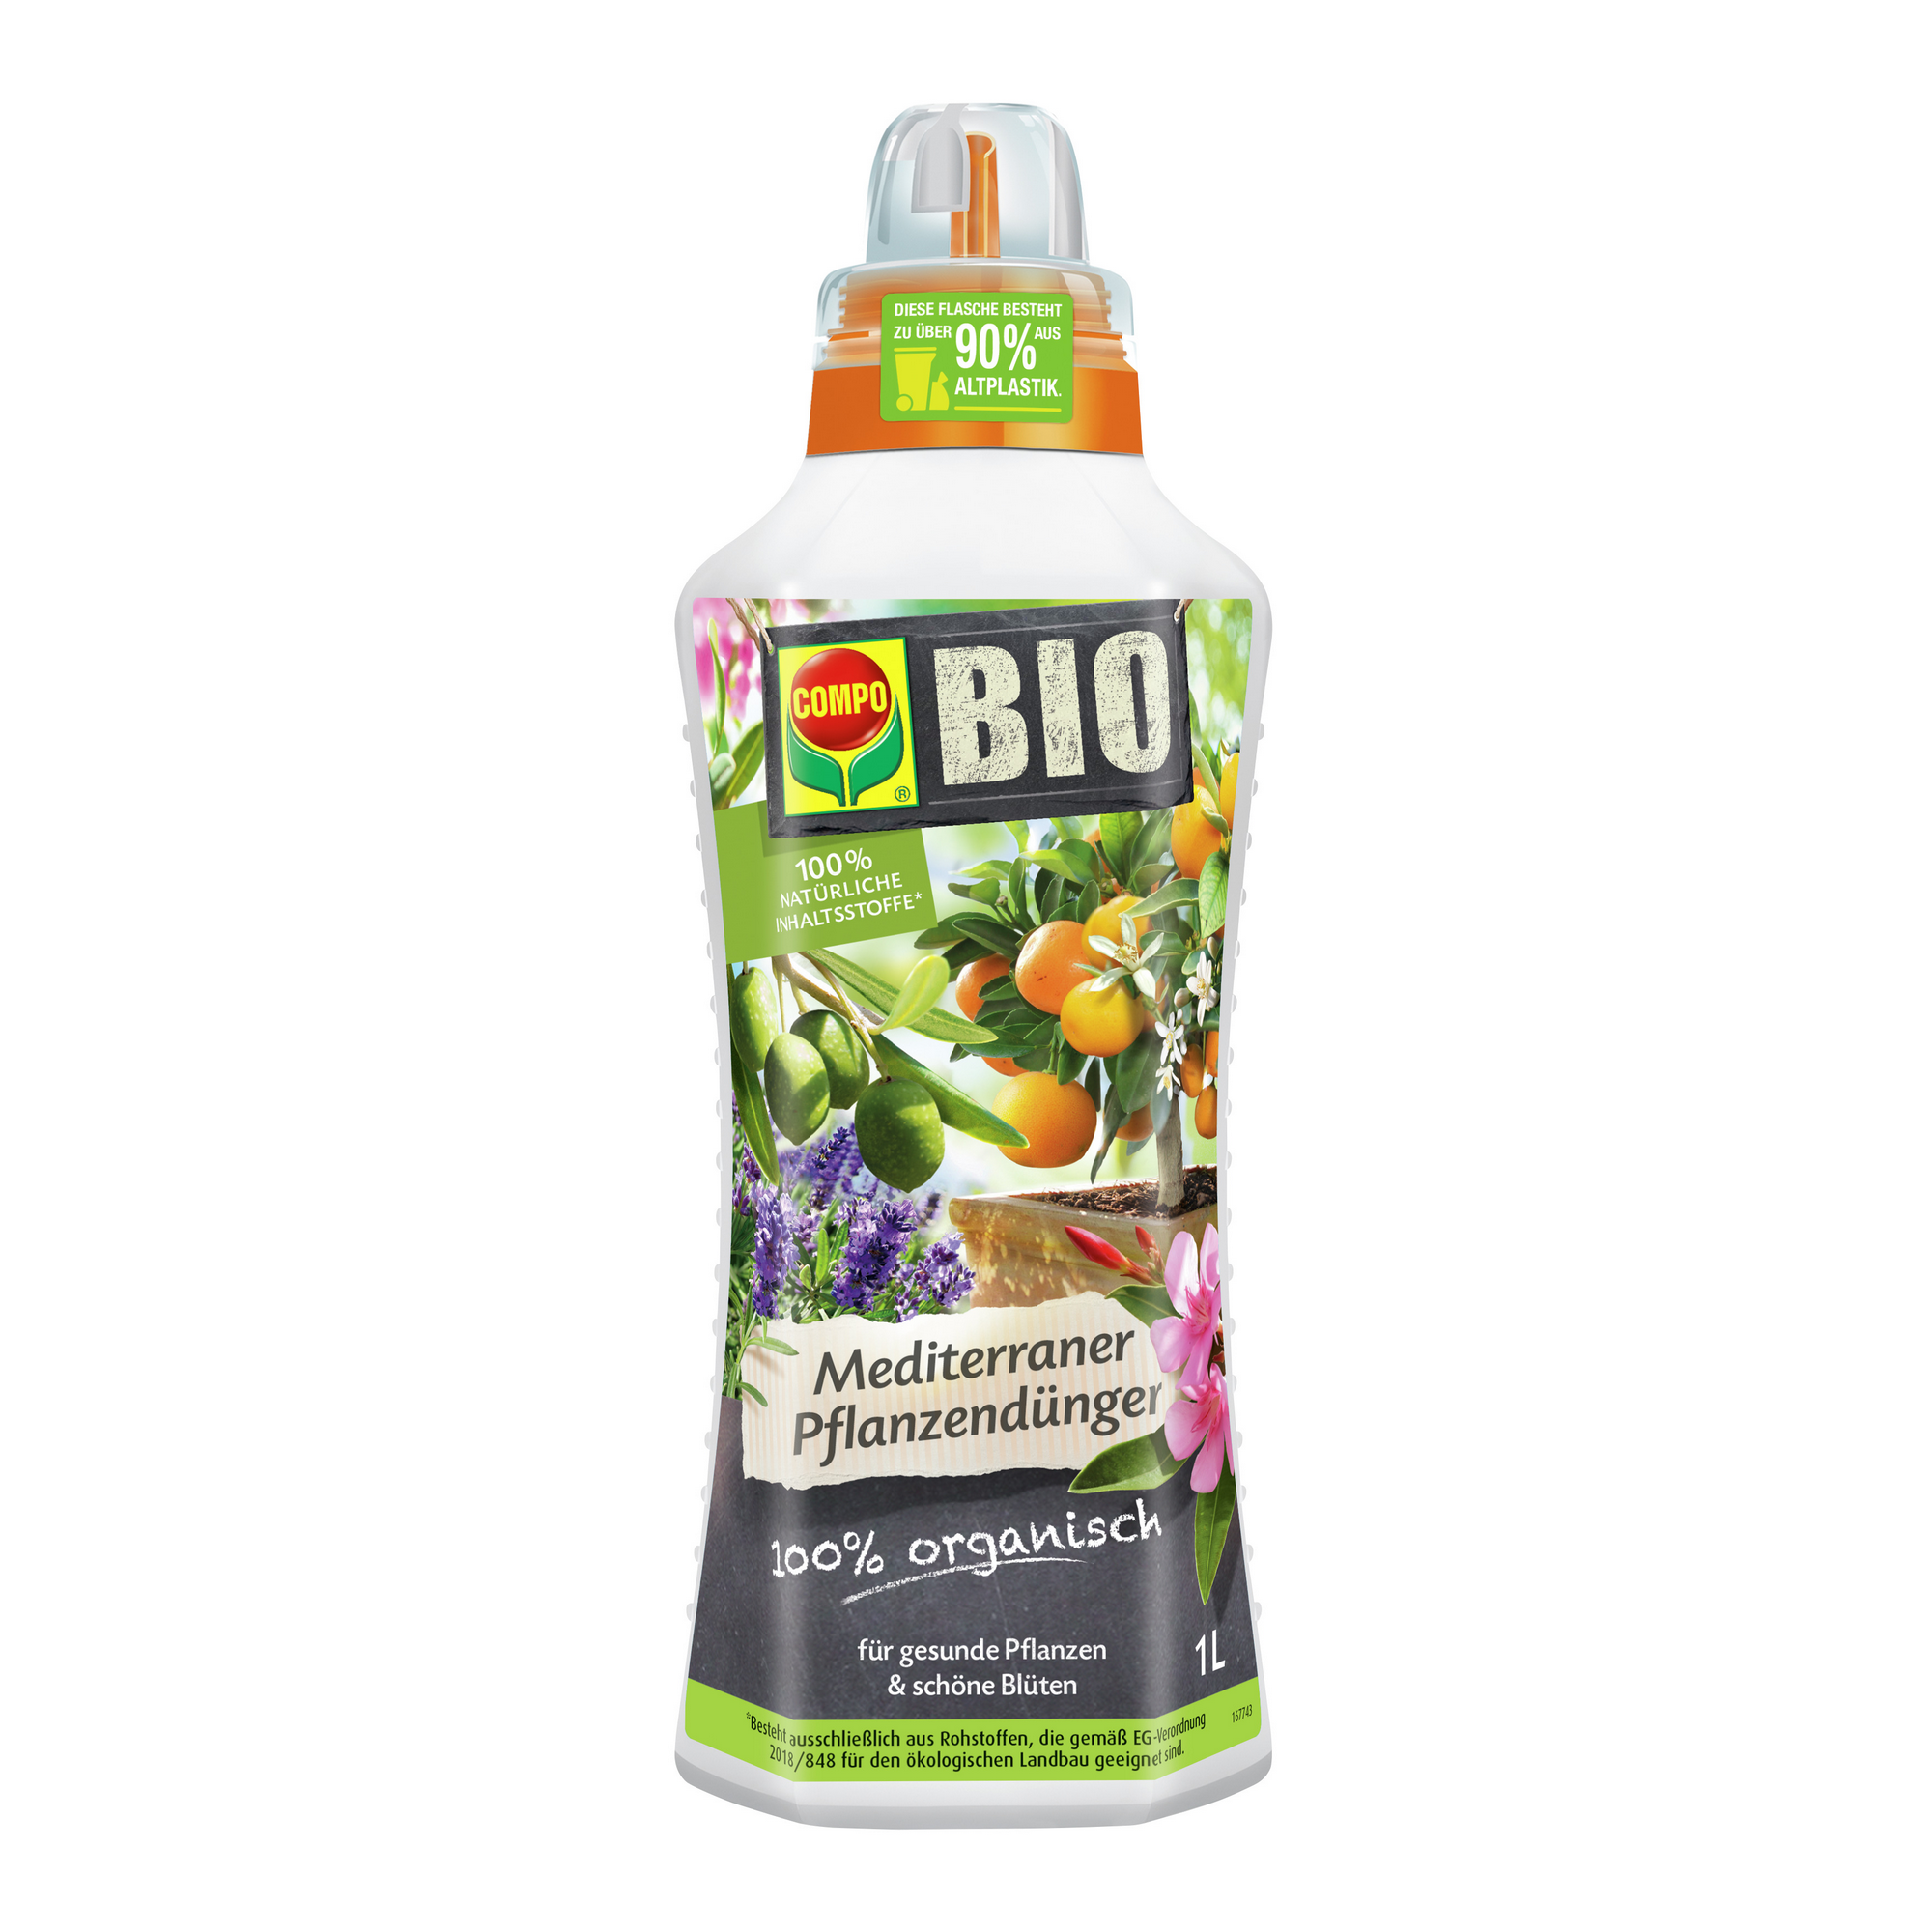 BIO-Mediterraner Pflanzendünger 1 l + product picture